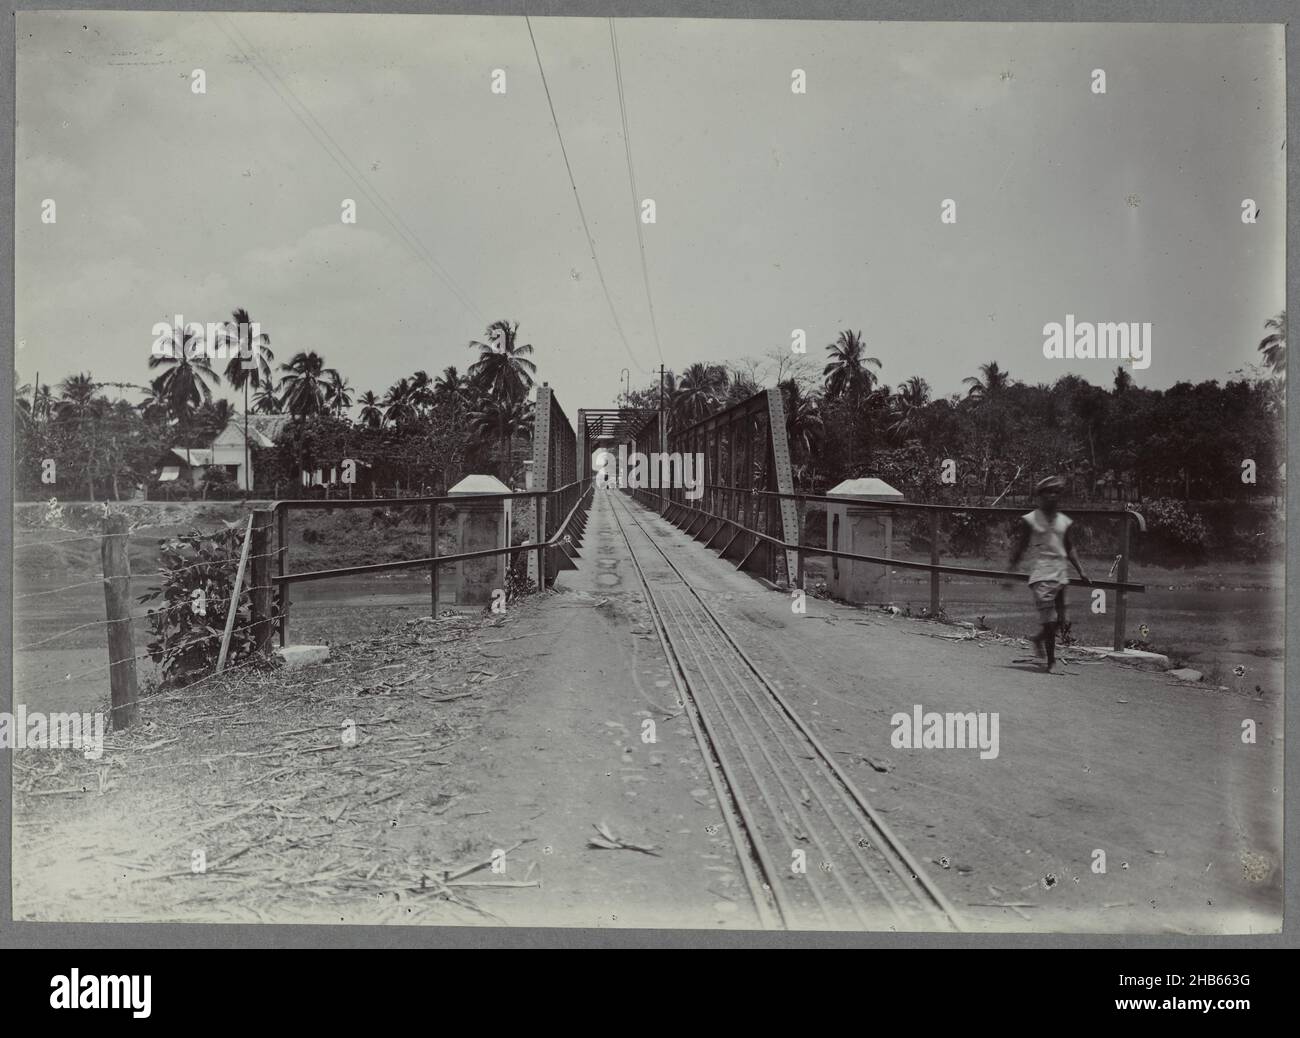 Eisenbahnbrücke über einen Fluss, Eisenbahnbrücke über einen Fluss. Ein Teil des Fotoalbums der Zuckerfabrik Tjomal aus der Zeit ca. 1900-1919., Anonym, Comal, c. 1900 - 1919, fotografischer Träger, Höhe 123 mm × Breite 173 mm Stockfoto